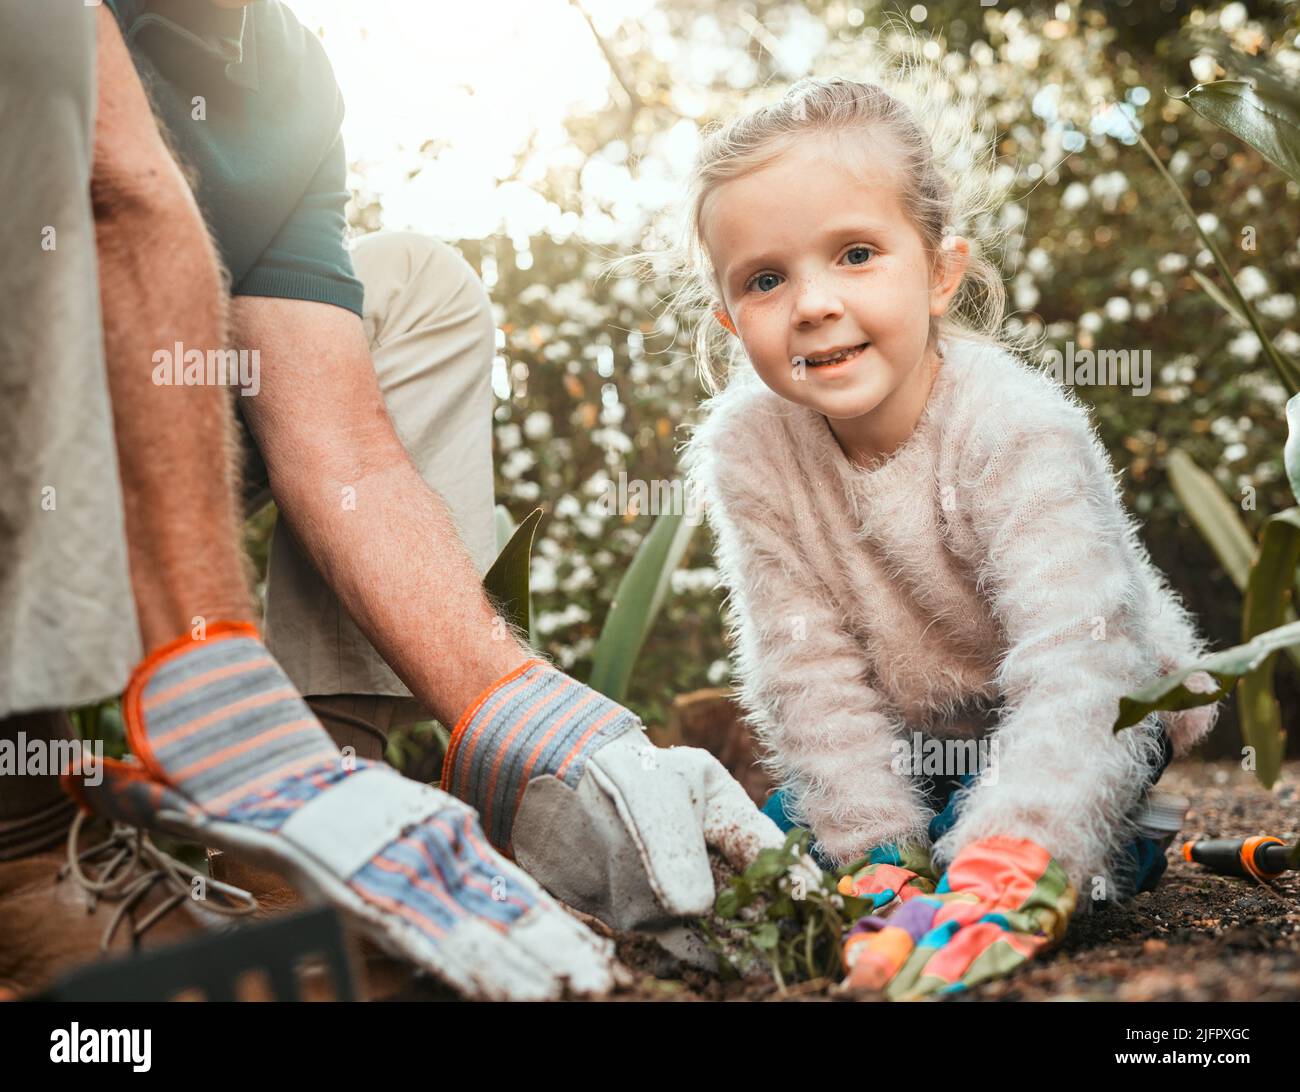 Die Liebe zum Gartenbau. Aufnahme eines entzückenden kleinen Mädchens, das mit ihrem Großvater im Garten arbeitet. Stockfoto